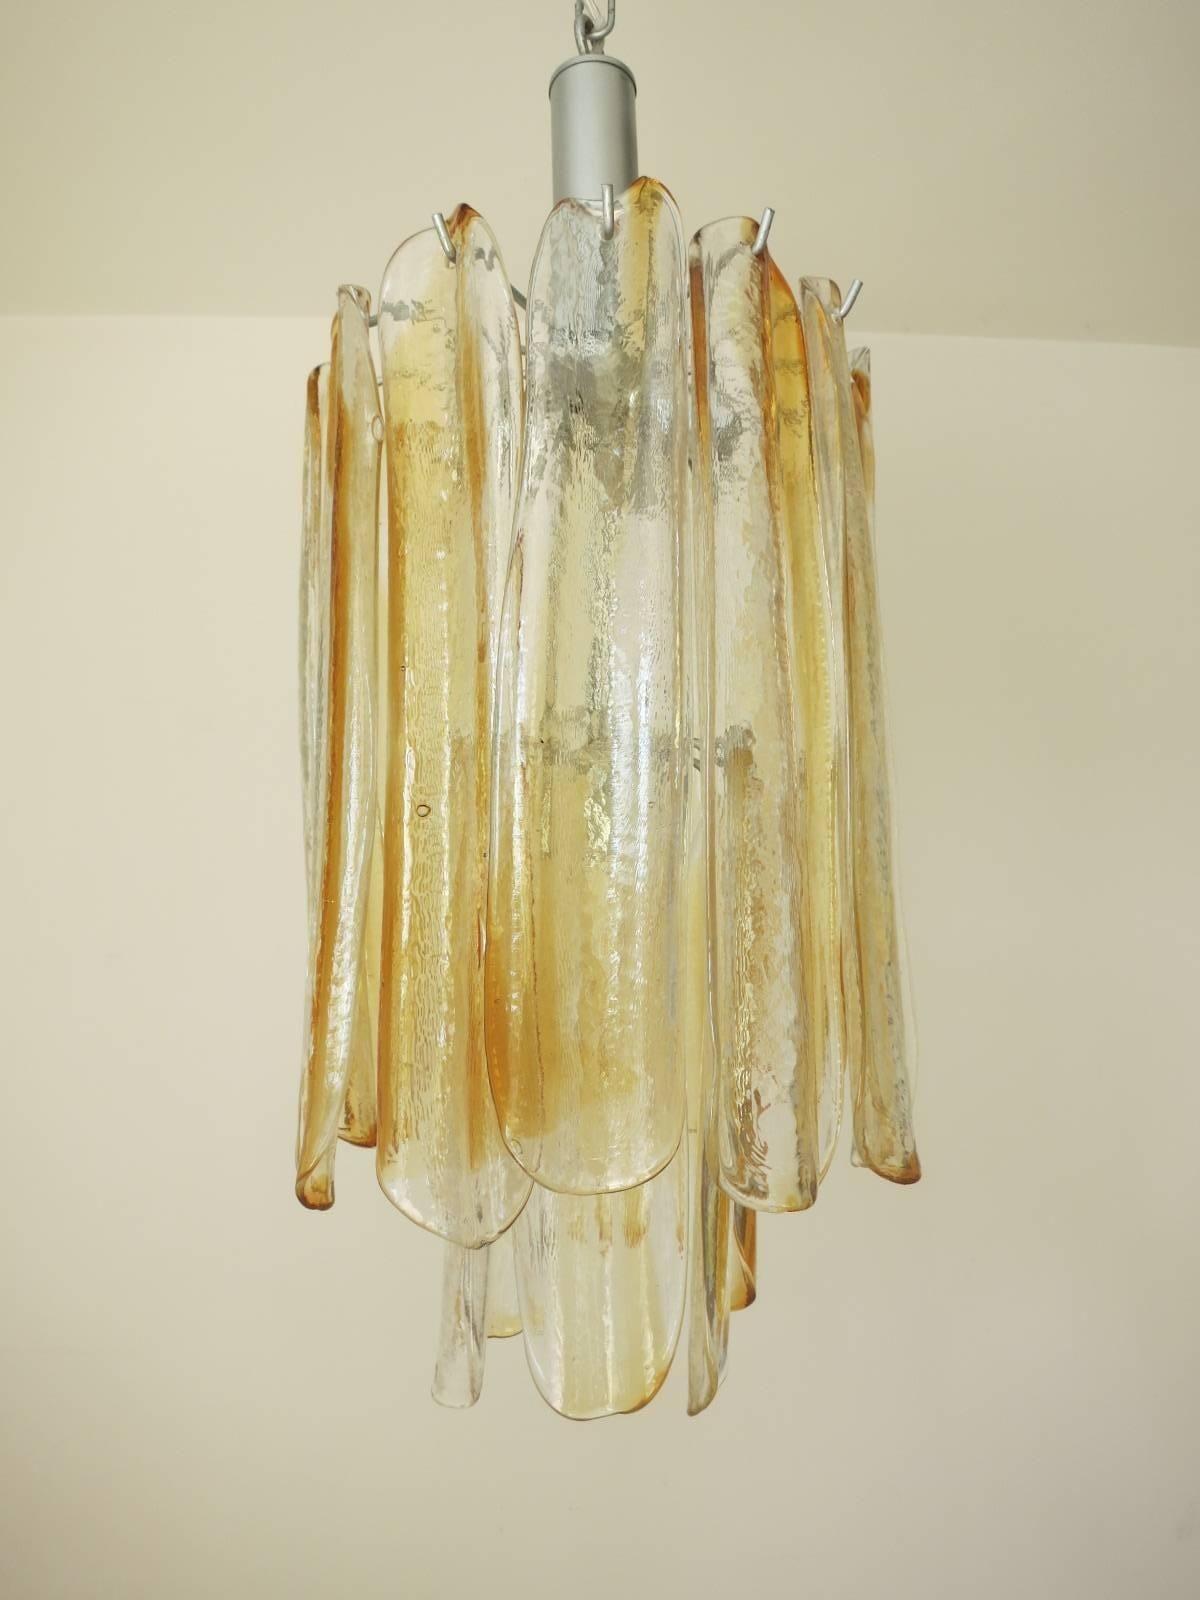 Ce magnifique lustre vintage se compose de 18 pétales en verre de Murano clair et ambré, empilés sur deux niveaux, montés sur une armature métallique peinte en nickel. Design/One, A.I.C., Italie, c. 1960.
Dimensions :
26.5 